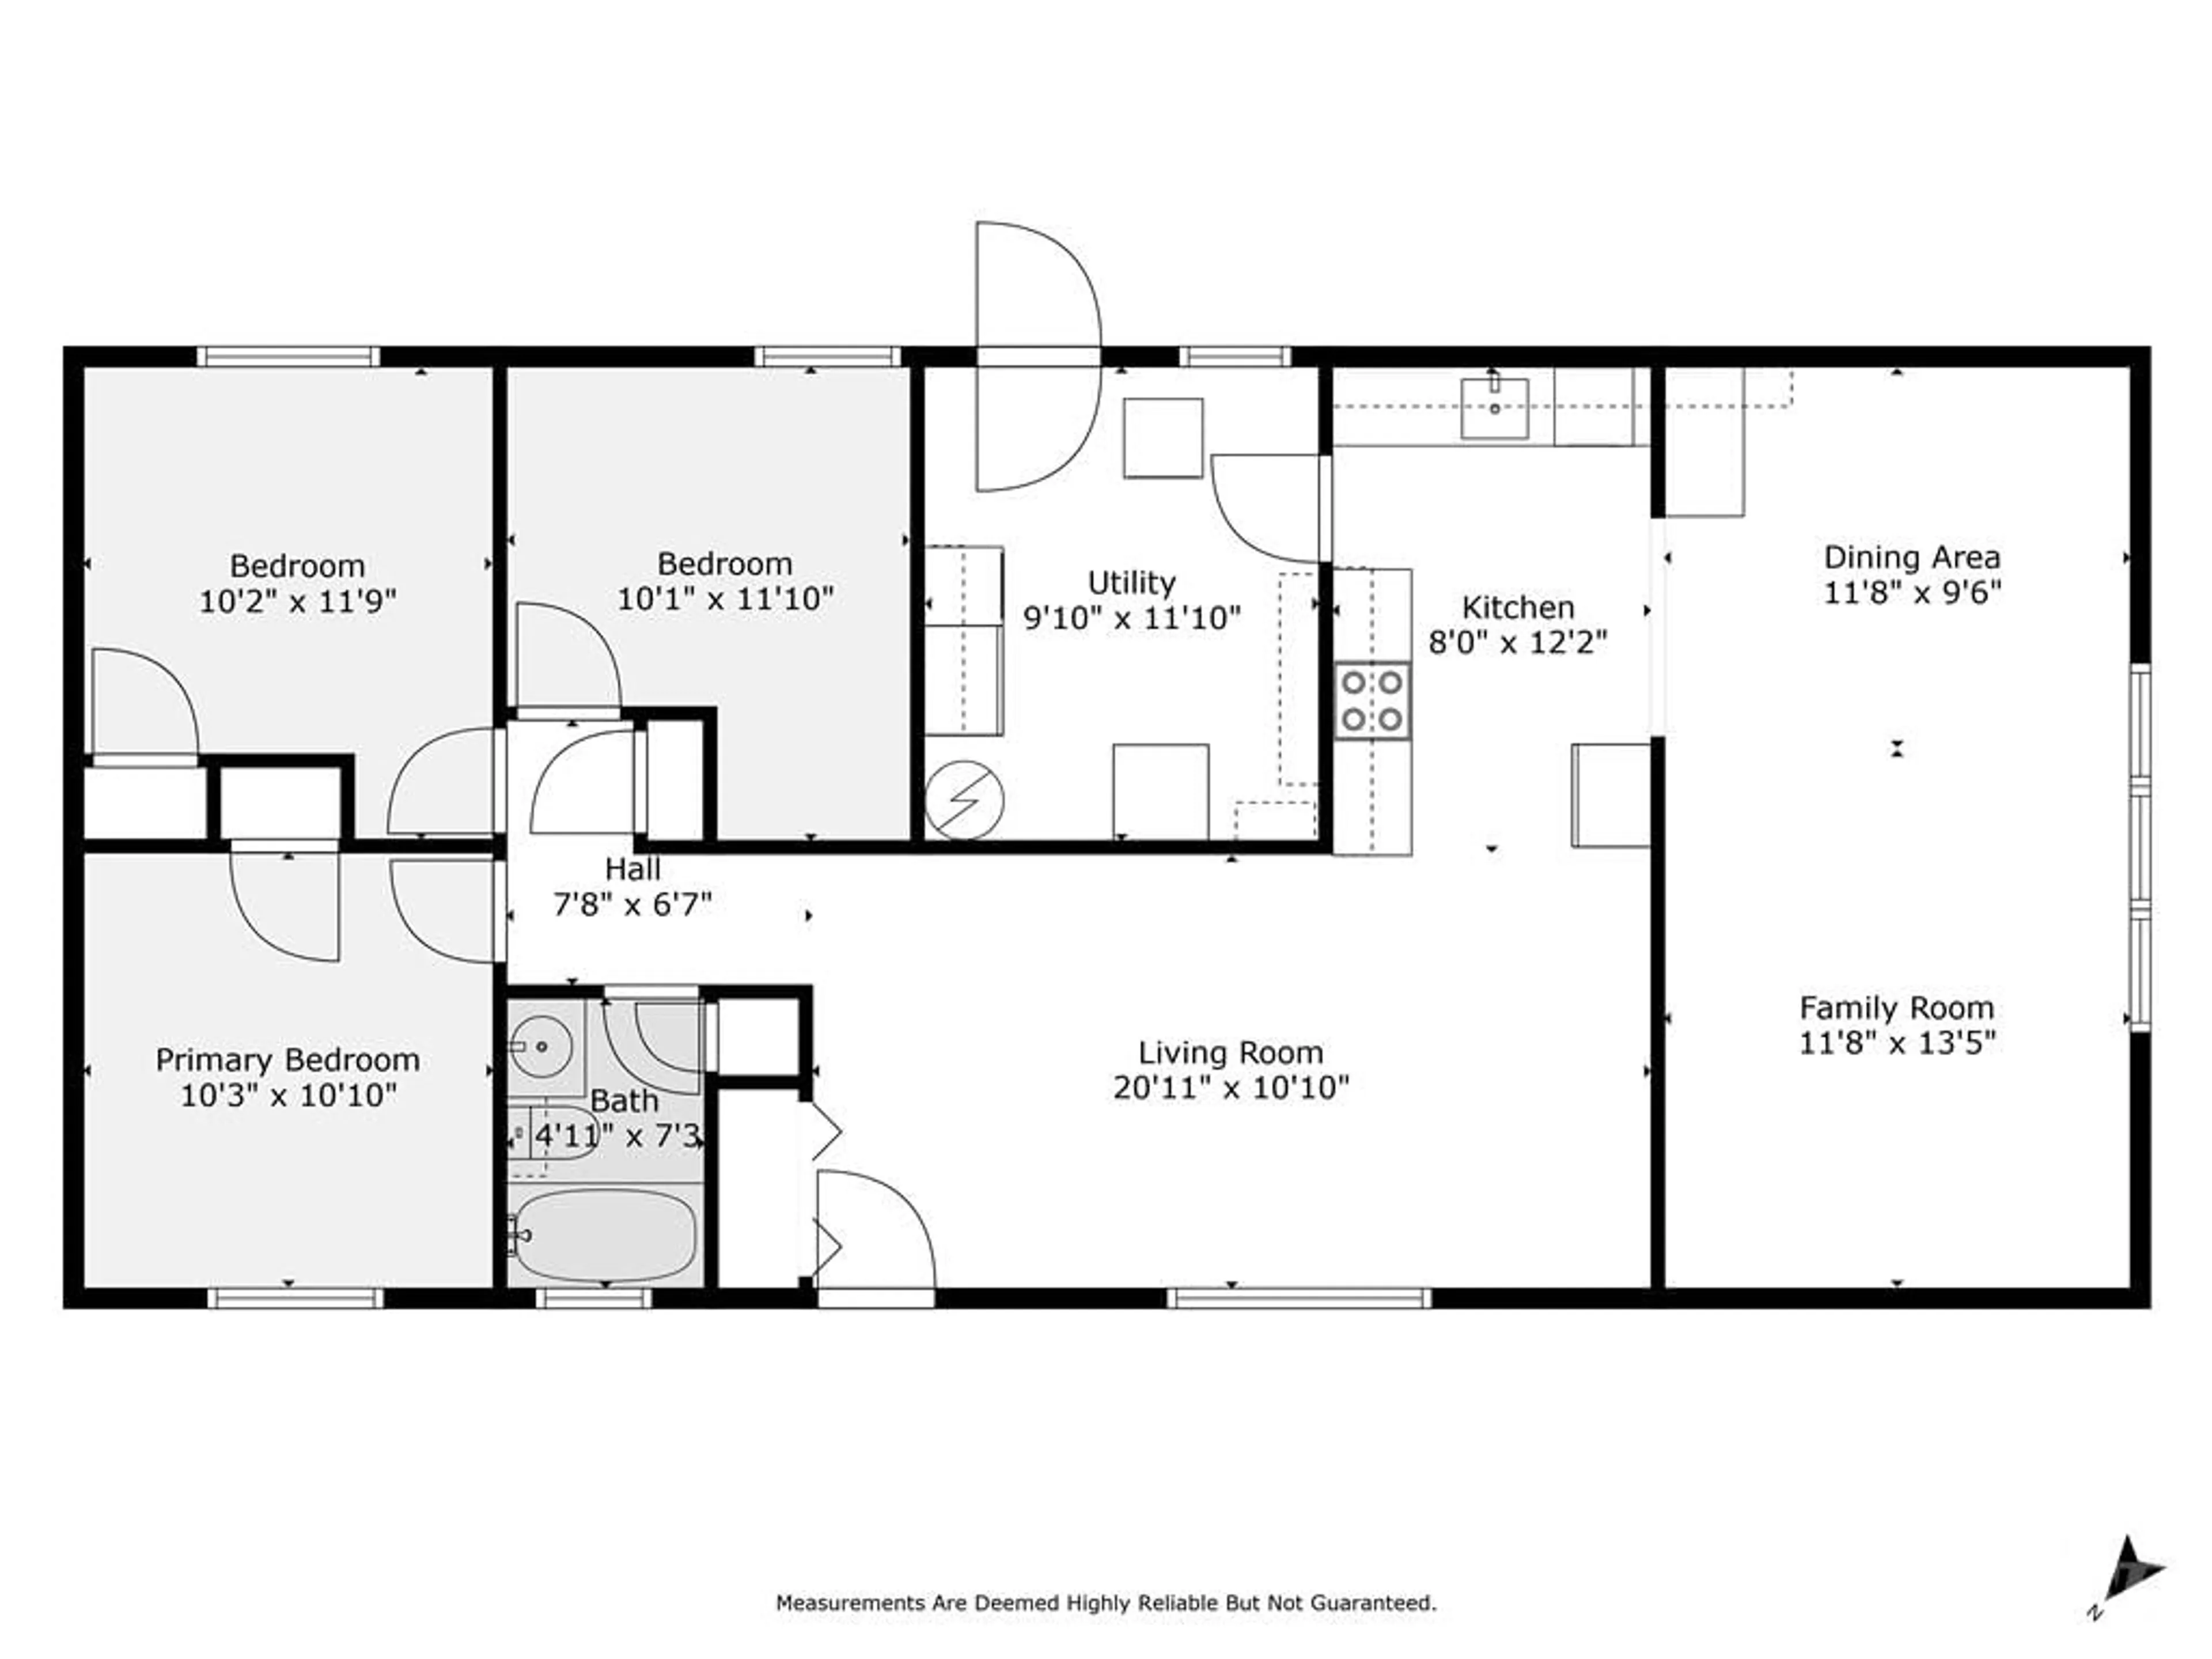 Floor plan for 138 EDEY St, Arnprior Ontario K7S 1C1